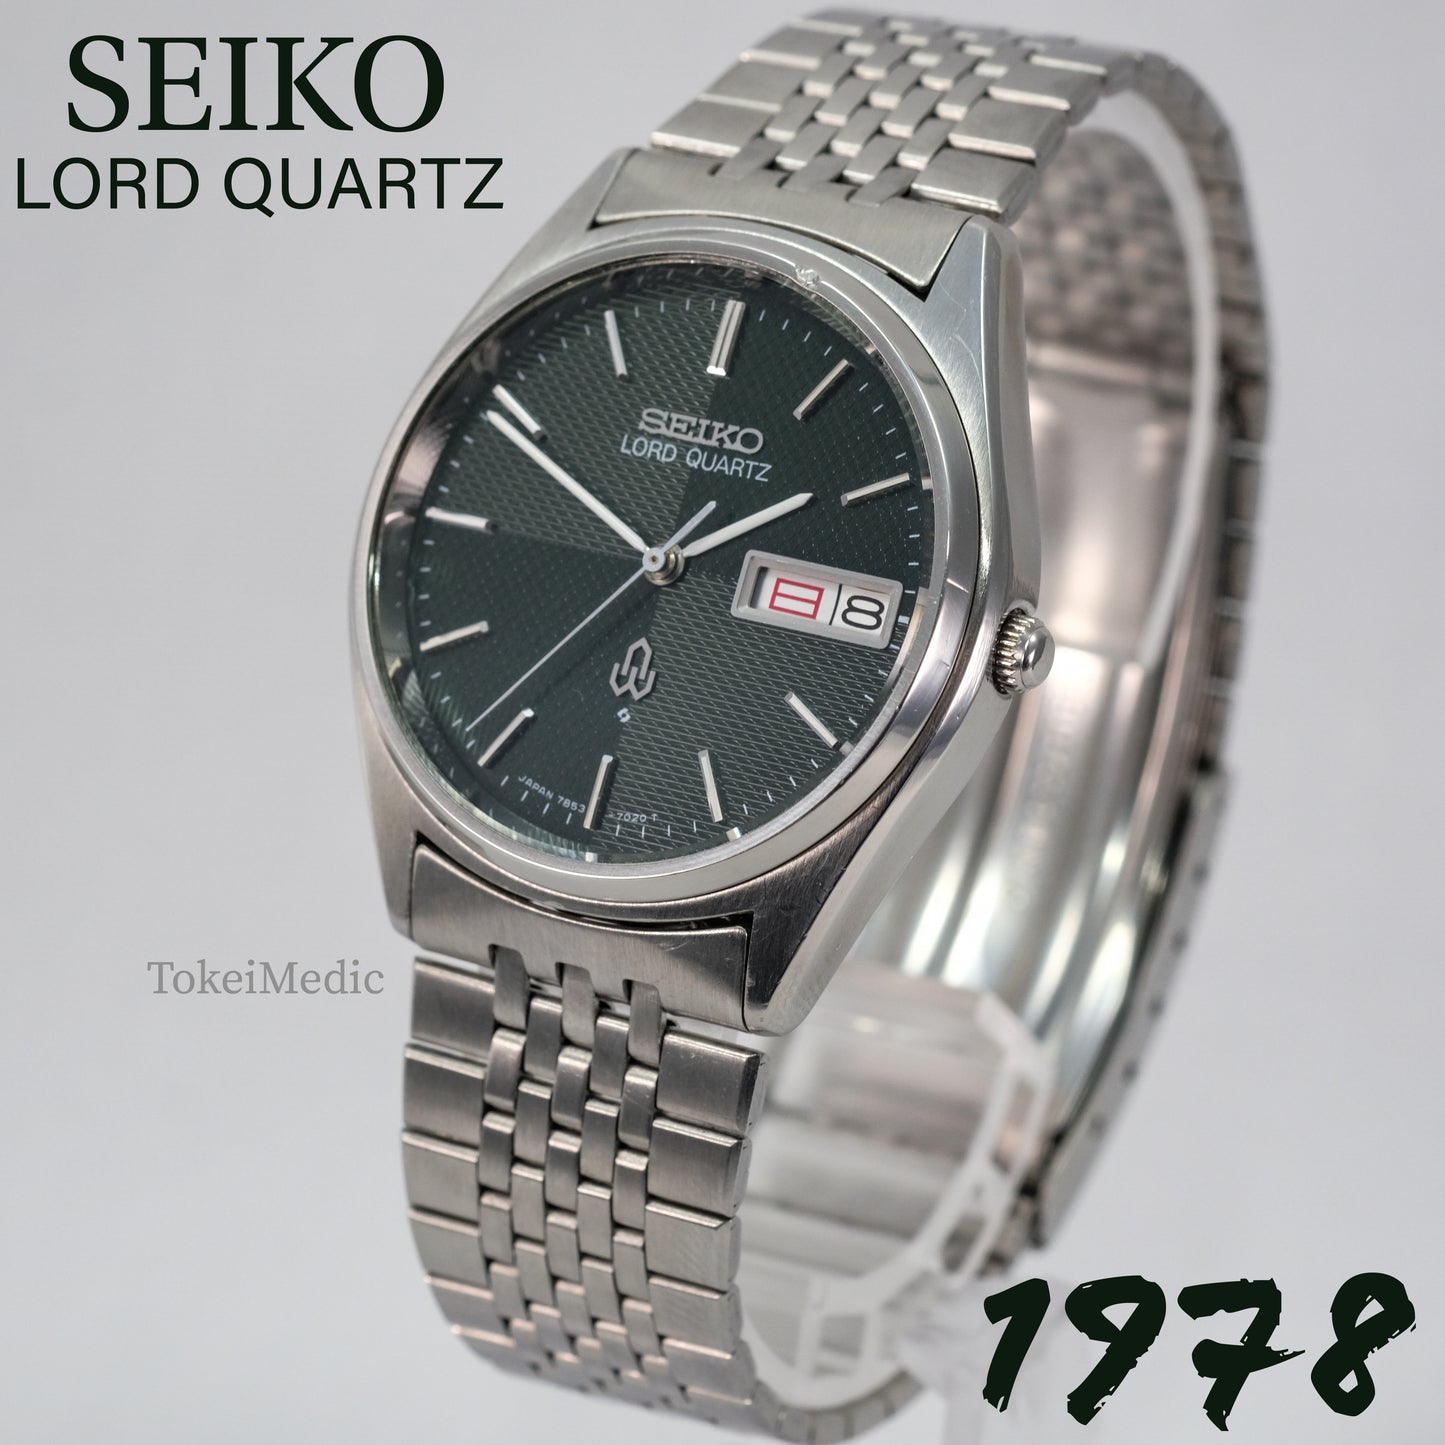 1978 Seiko Lord Quartz 7853-7020